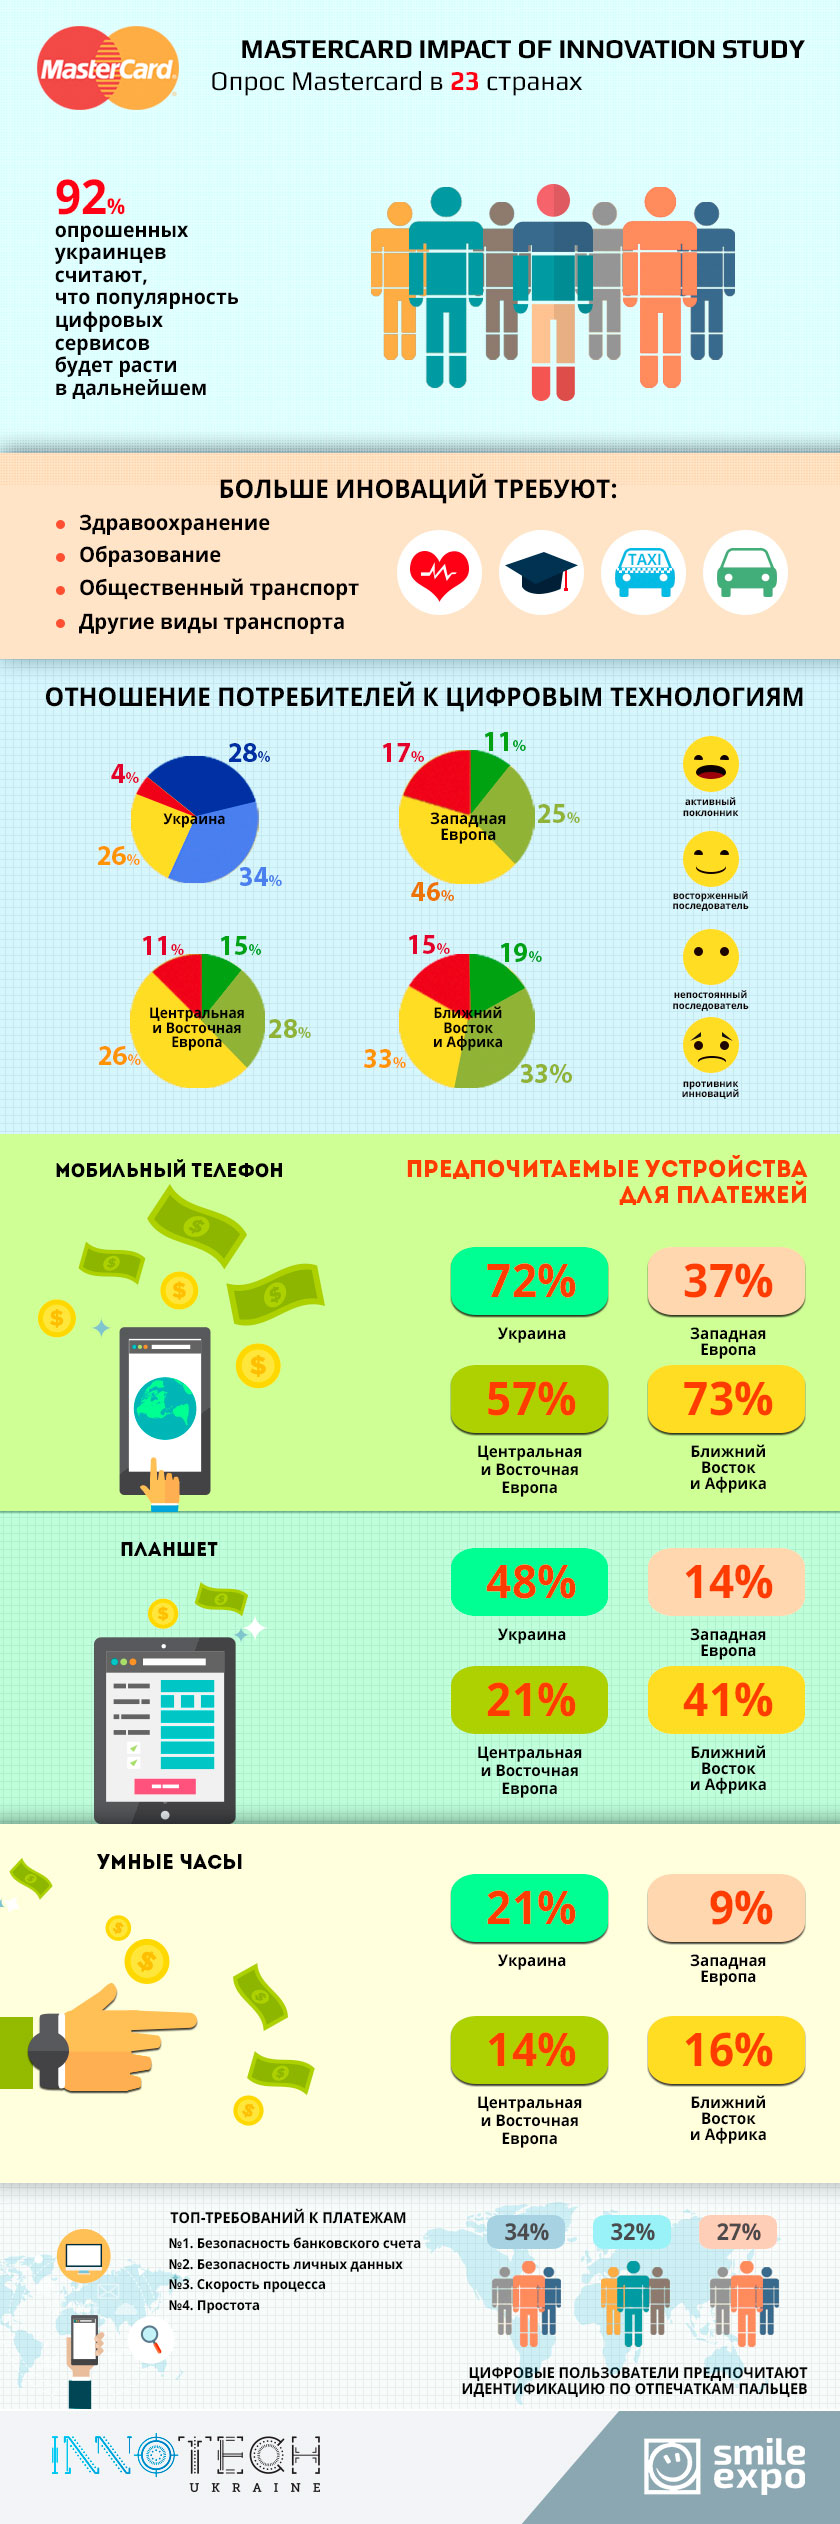 Отношение к цифровым технологиям в украине и в мире. Инфографика